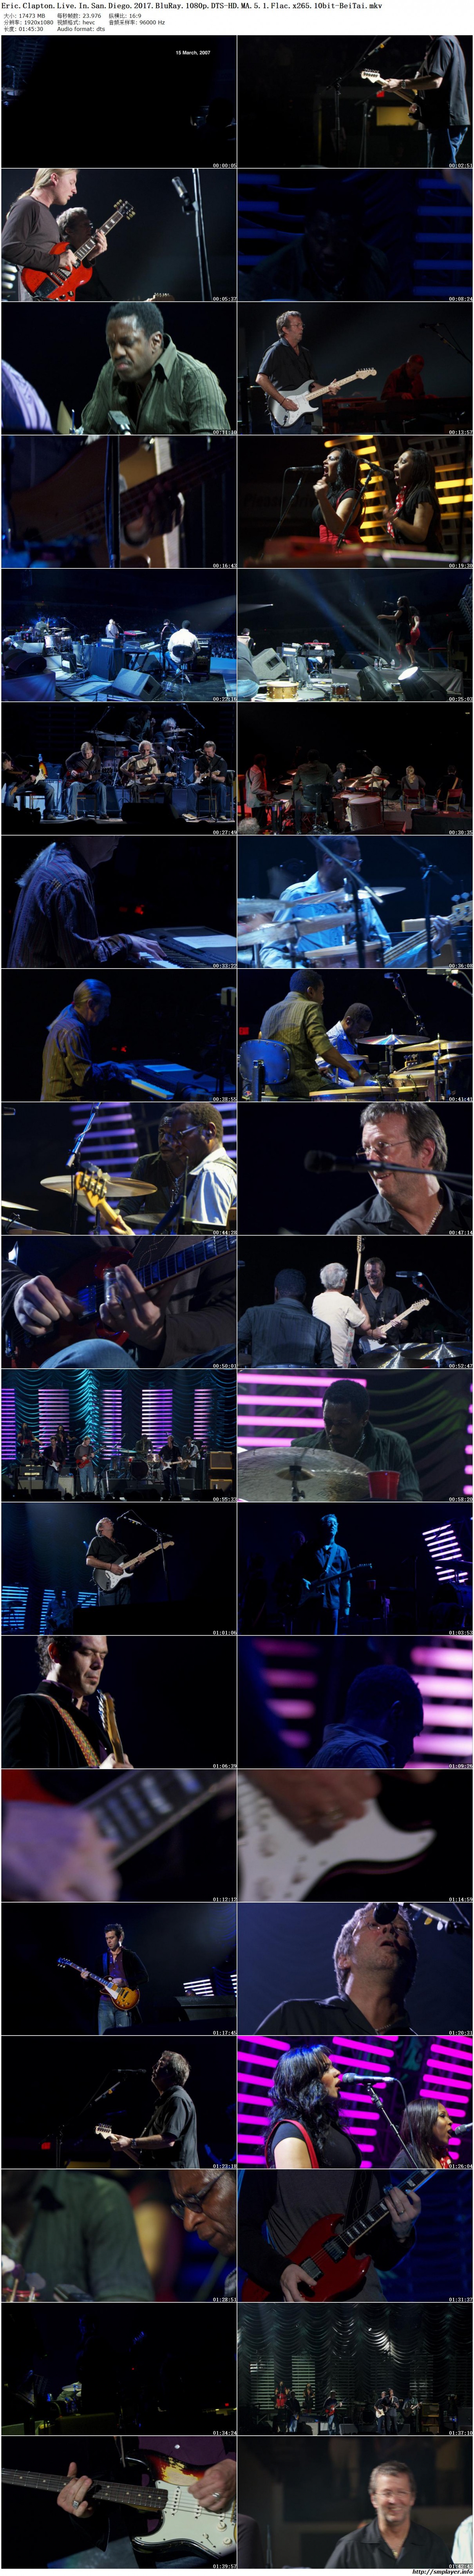 蓝调大师 Eric Clapton 圣地牙哥现场实录[英语无字].Eric.Clapton.Live.In.San.Diego.2017.BluRay.1080p.DTS-HD.MA.5.1.Flac.x265.10bit-BeiTai 17.06GB-2.jpg